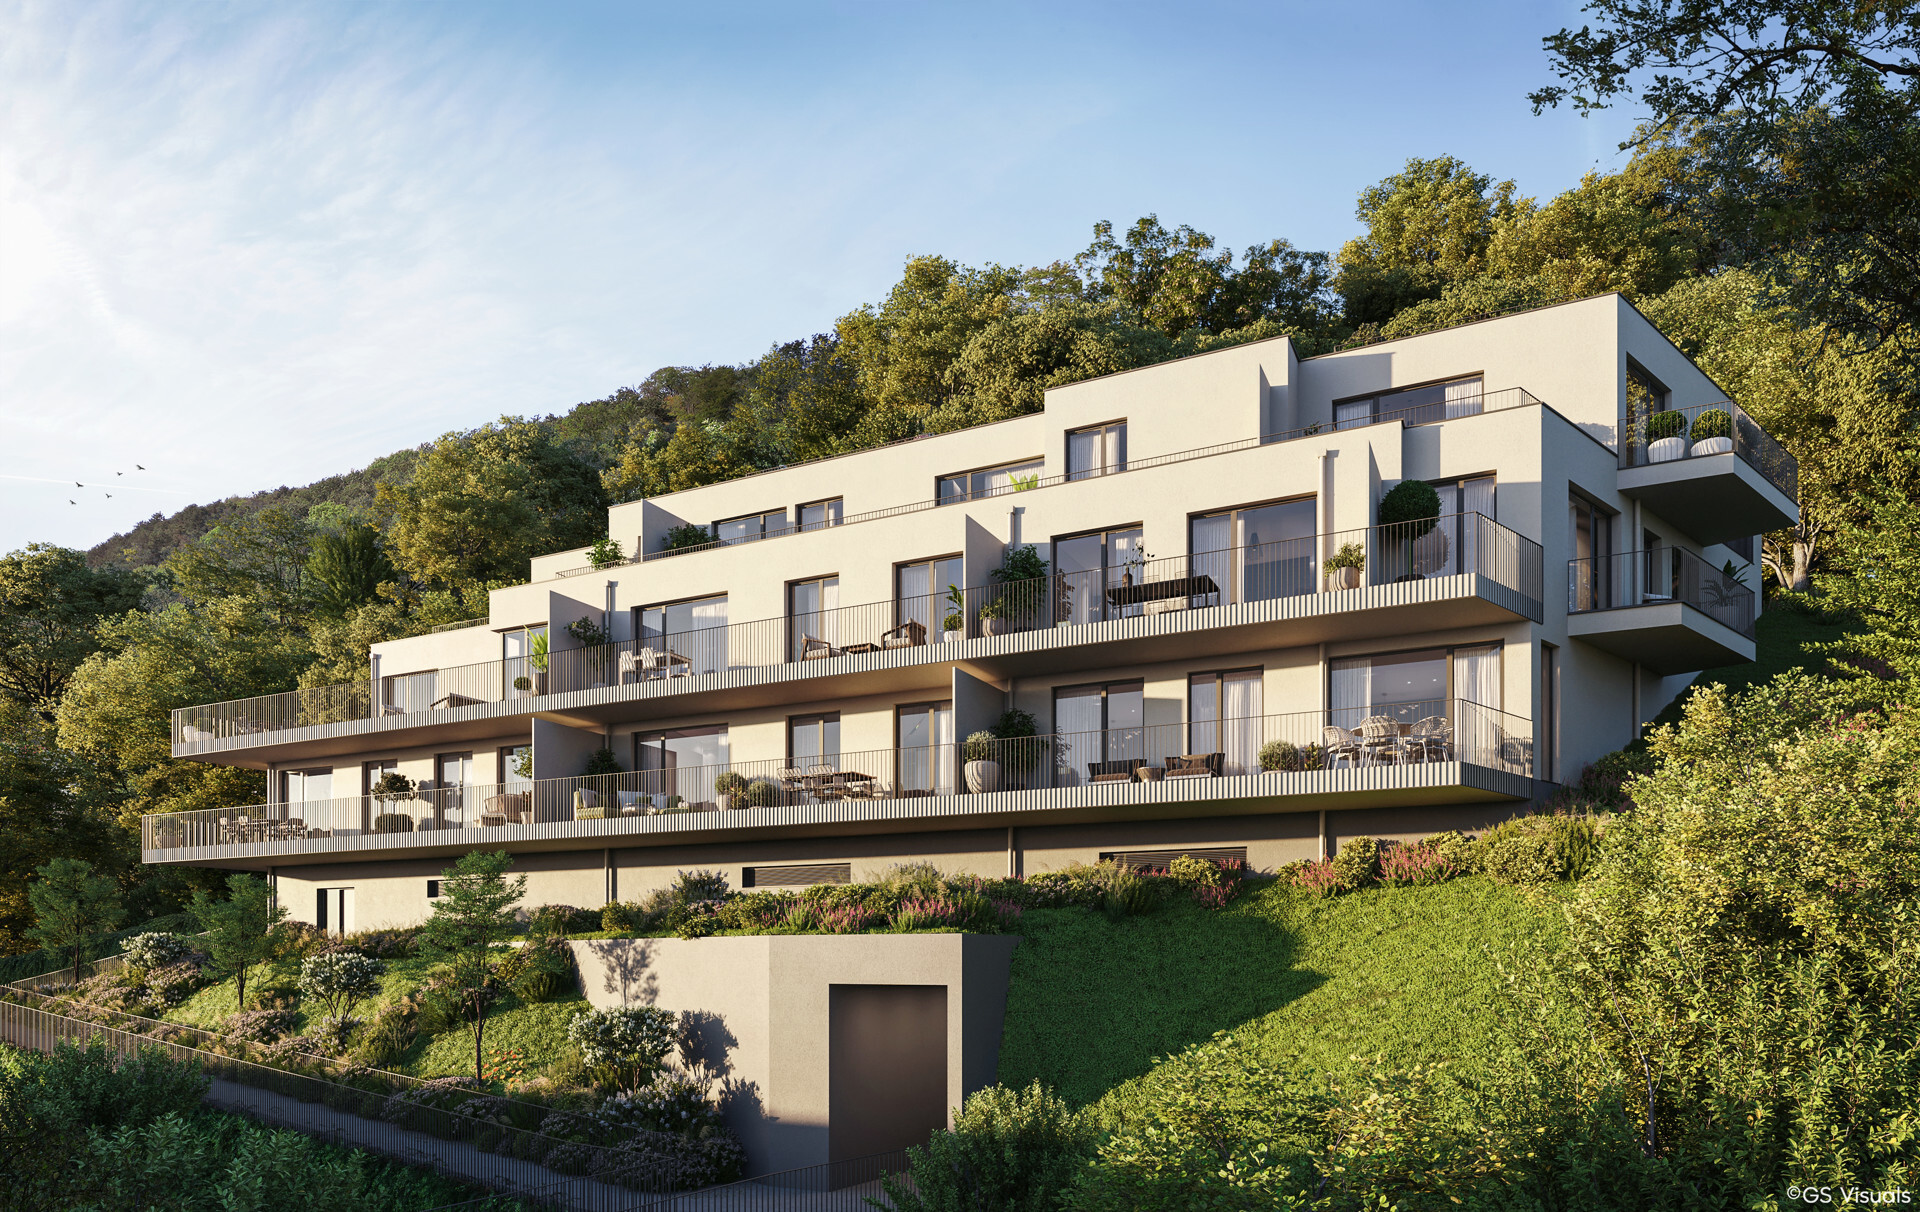 PROVISIONSFREI: 3-Zimmer Neubauwohnung - 5 Minuten zur Wiener Stadtgrenze - zu kaufen in 2391 Kaltenleutgeben